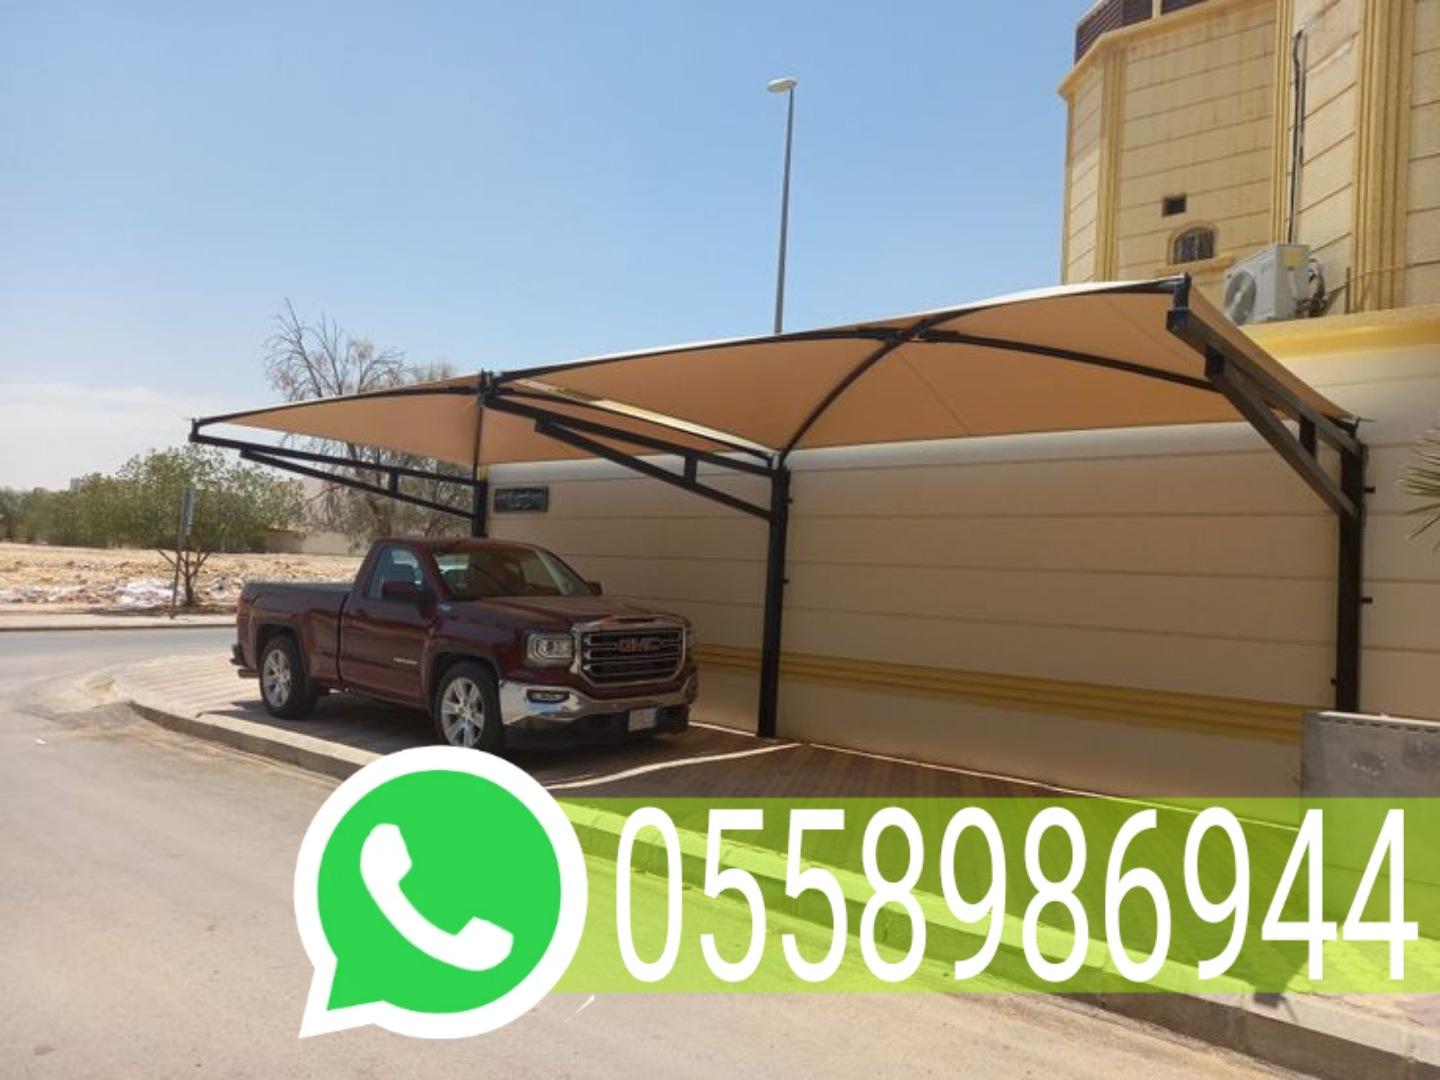 تركيب مظلات كابولي في مكة المكرمة جوال 0558986944 934866970